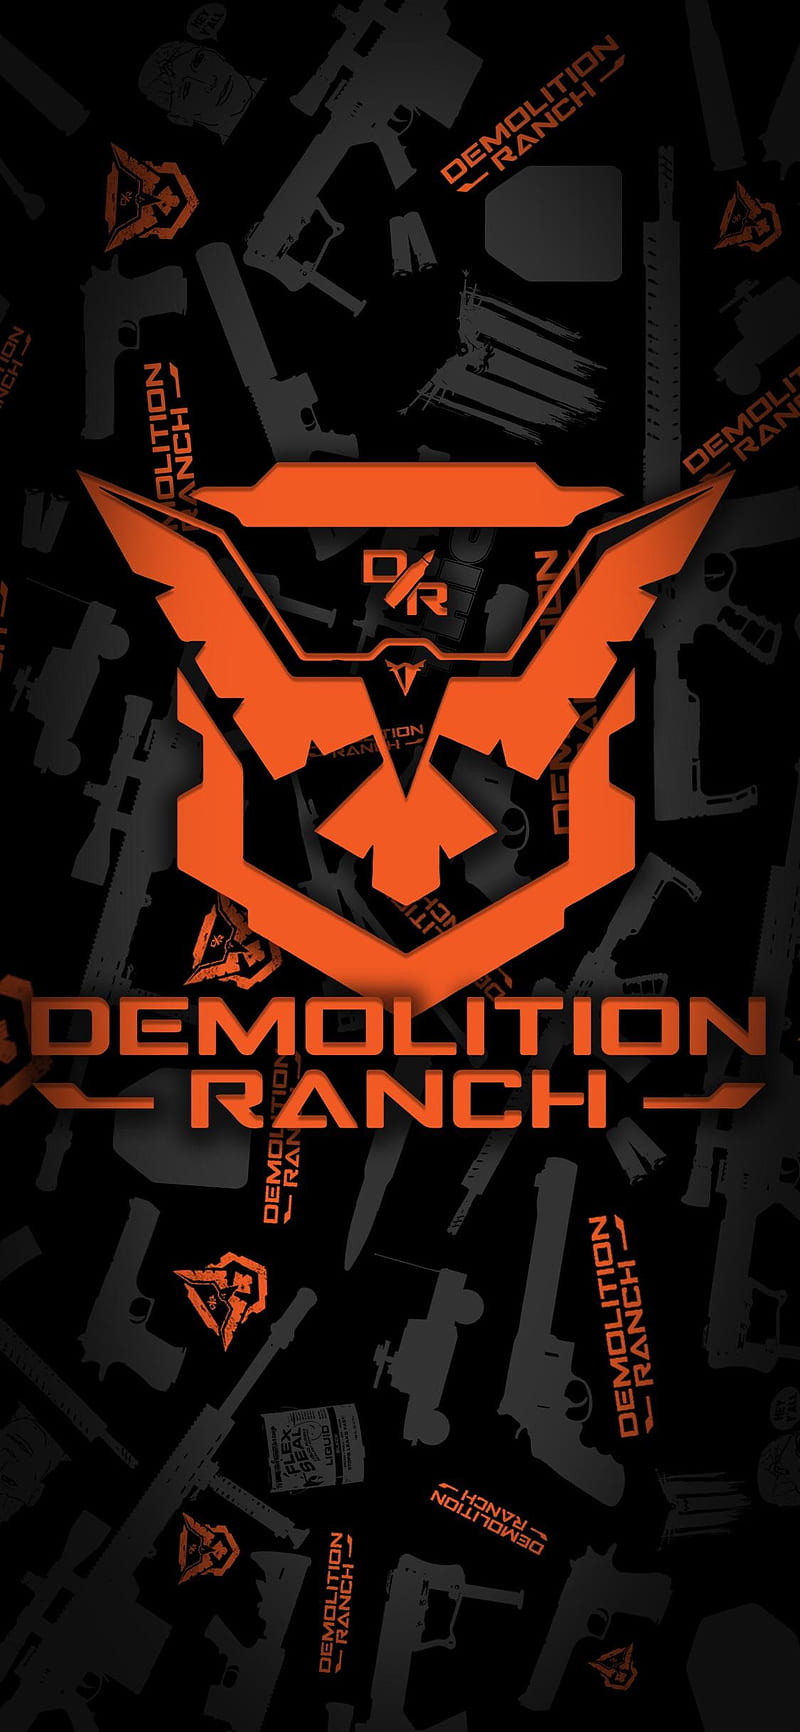 Demo Ranch, demo ranch logo, demolition ranch, HD phone wallpaper